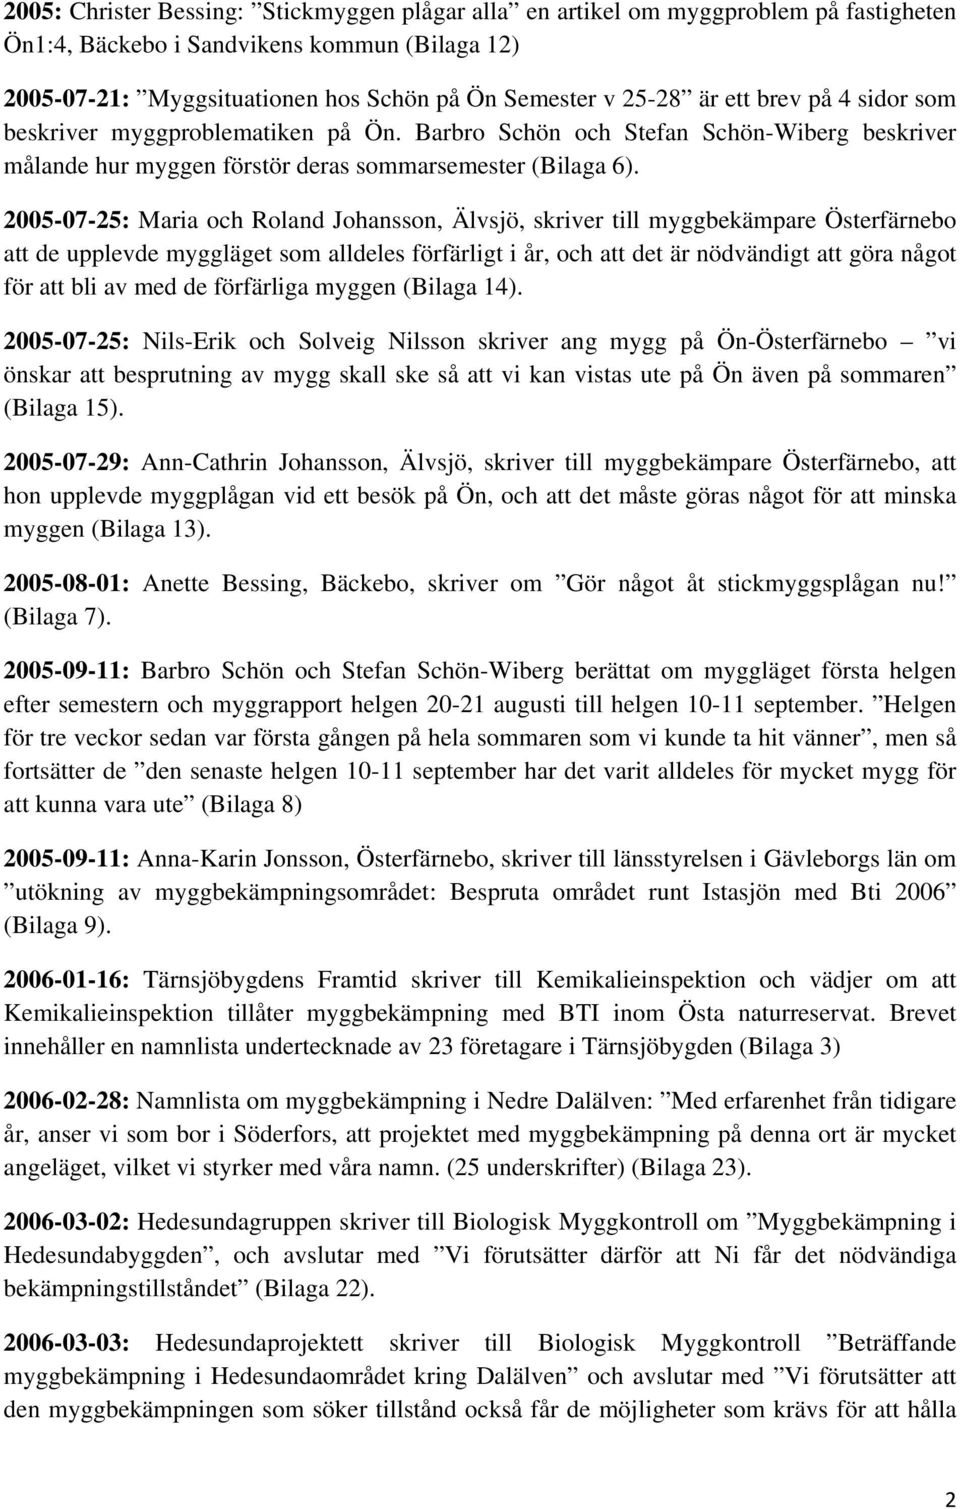 2005-07-25: Maria och Roland Johansson, Älvsjö, skriver till myggbekämpare Österfärnebo att de upplevde myggläget som alldeles förfärligt i år, och att det är nödvändigt att göra något för att bli av